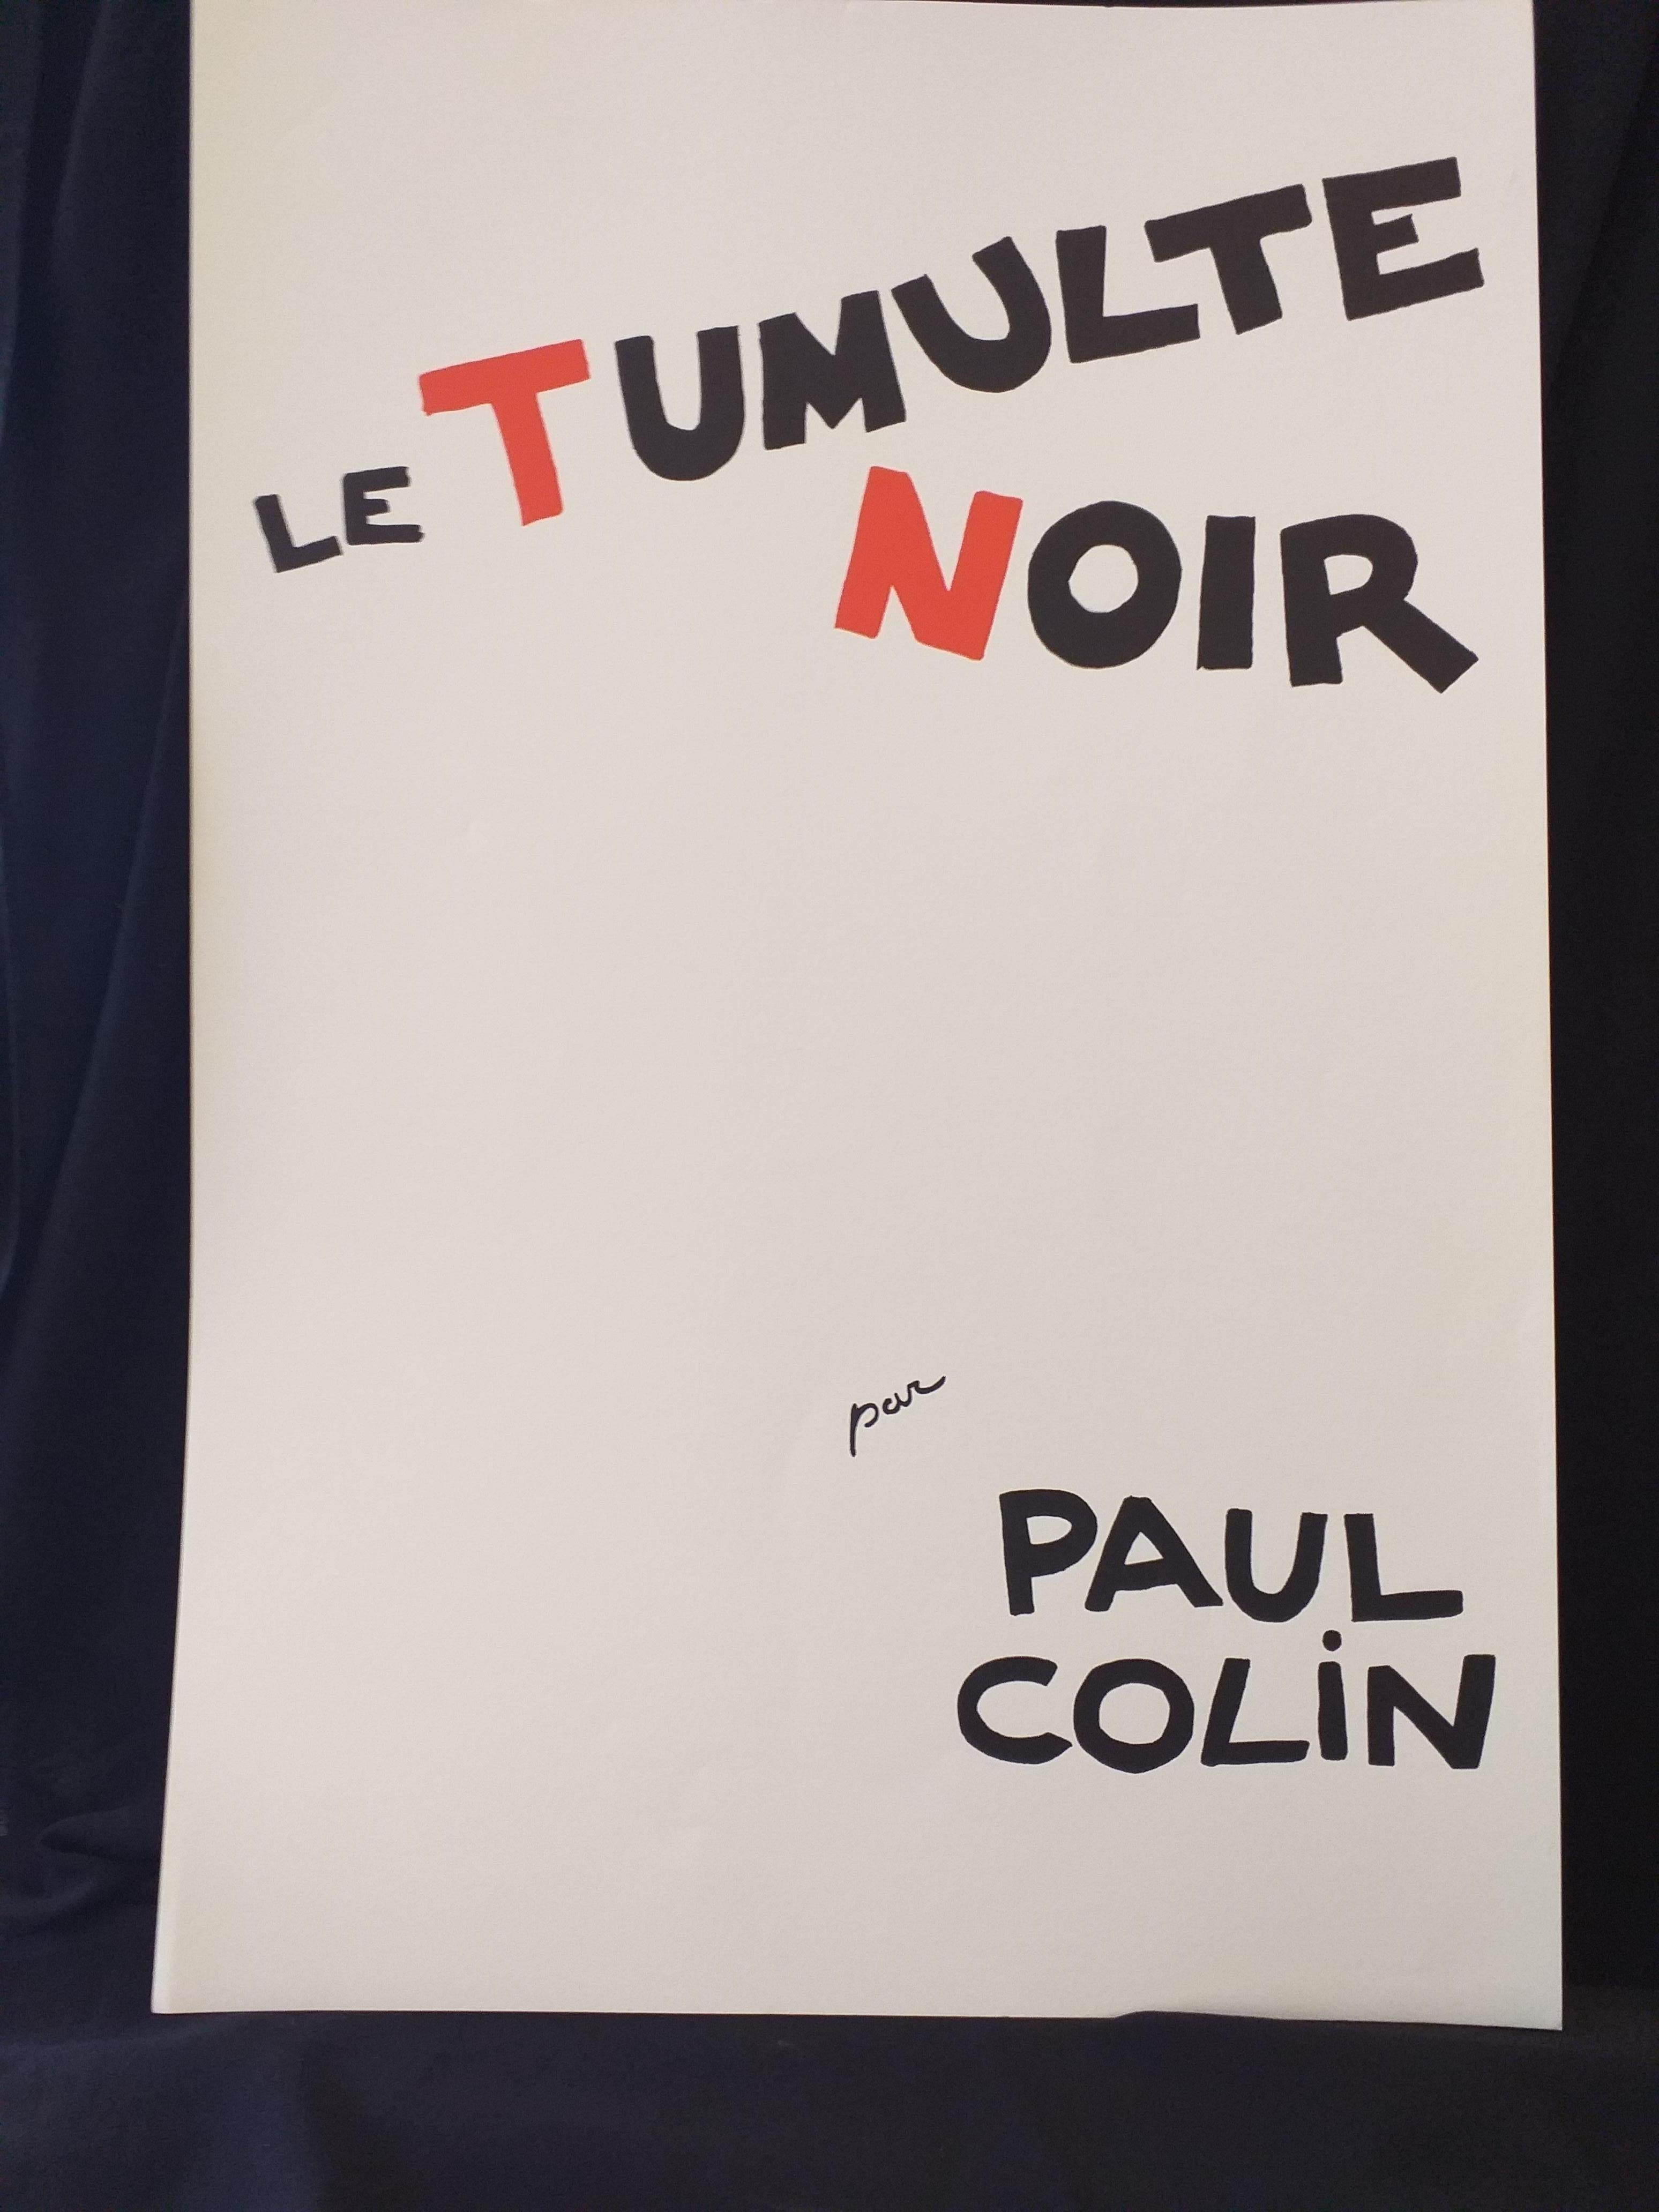 Paper Paul Colin Poster Artist Le Tumulte Noir 10 For Sale